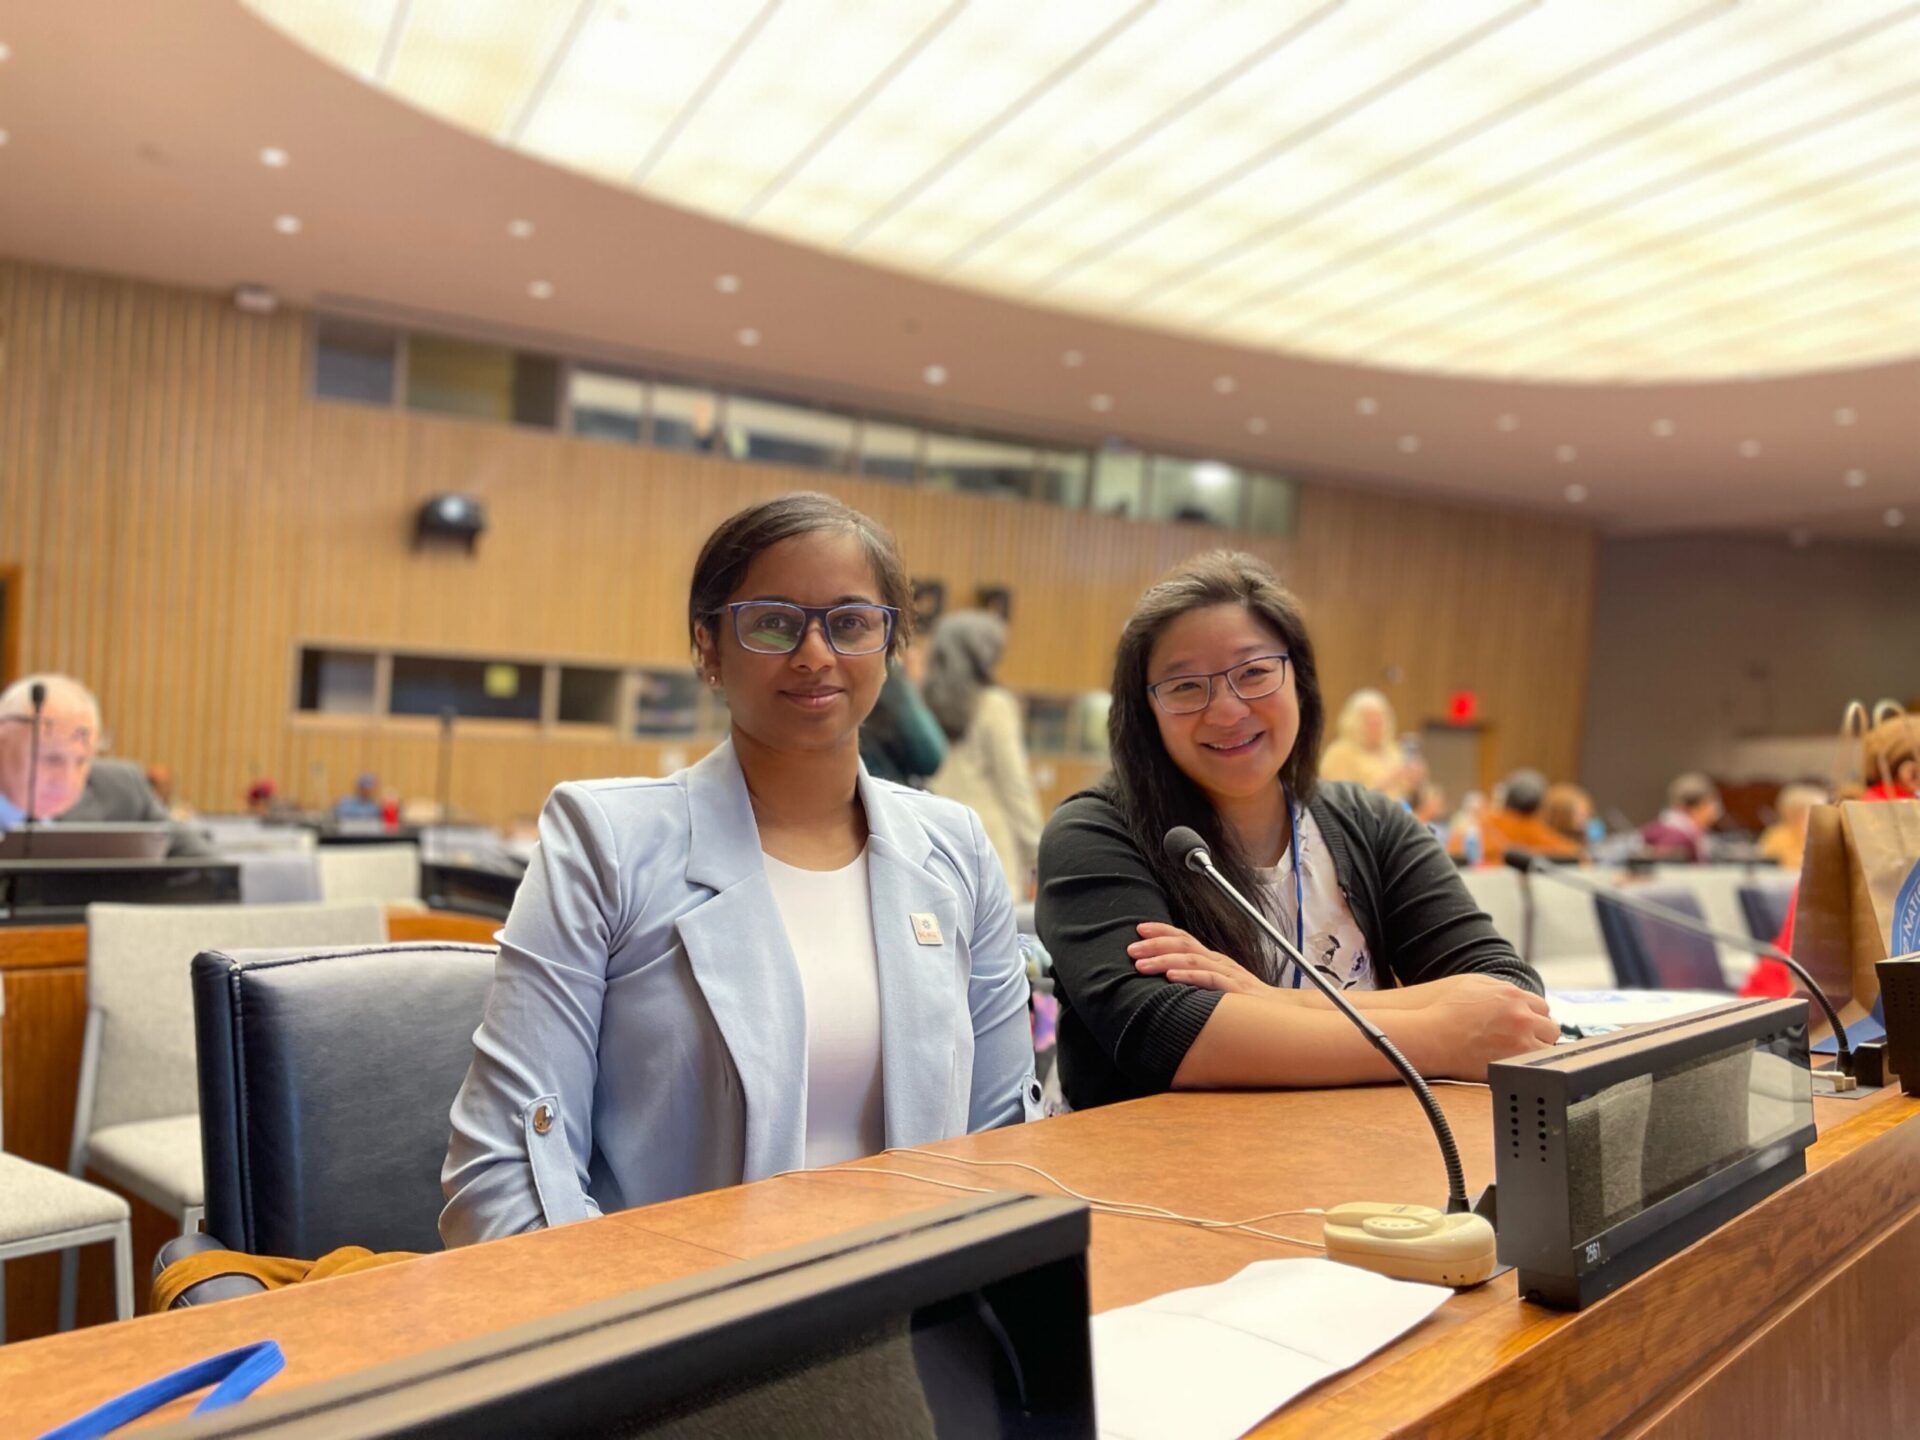 La dottoressa Melanie Ratnam e la dottoressa Poh Tan presso la sede delle Nazioni Unite a New York per CSW67.